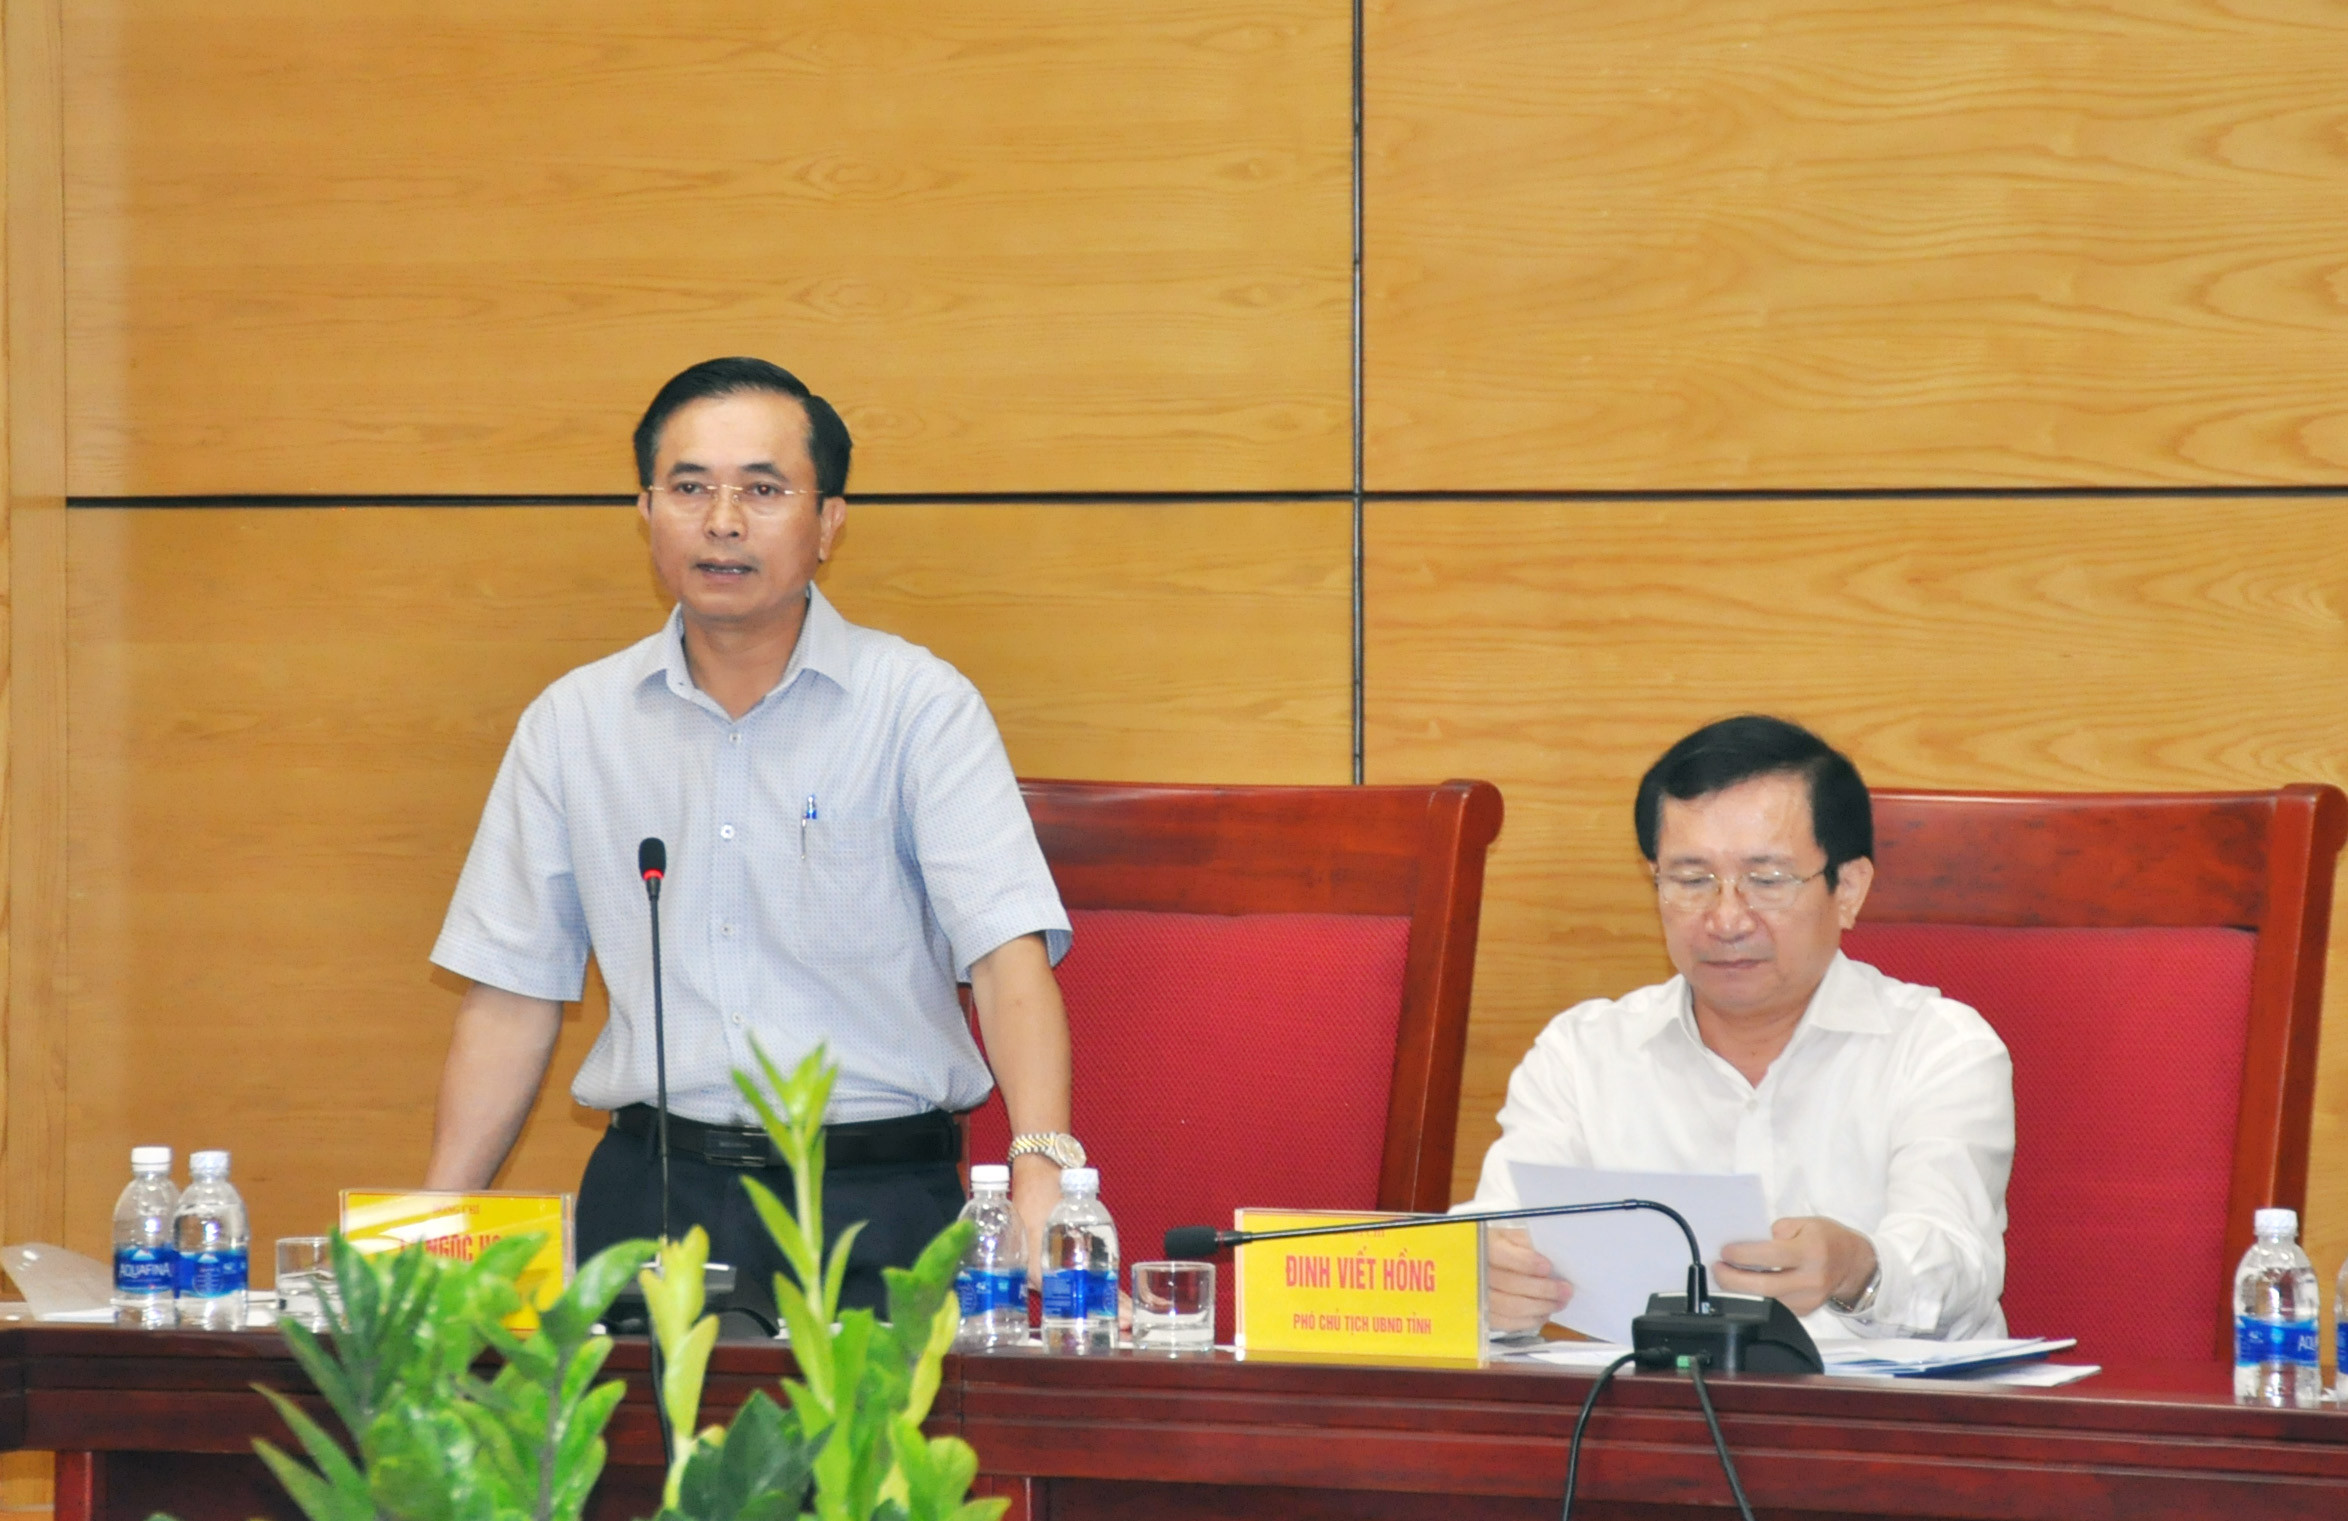 Phó chủ tịch UBND tỉnh Lê Ngọc Hoa trao đổi những bất cập trong thủ tục thu hút đầu tư. Ảnh; Thu Huyền